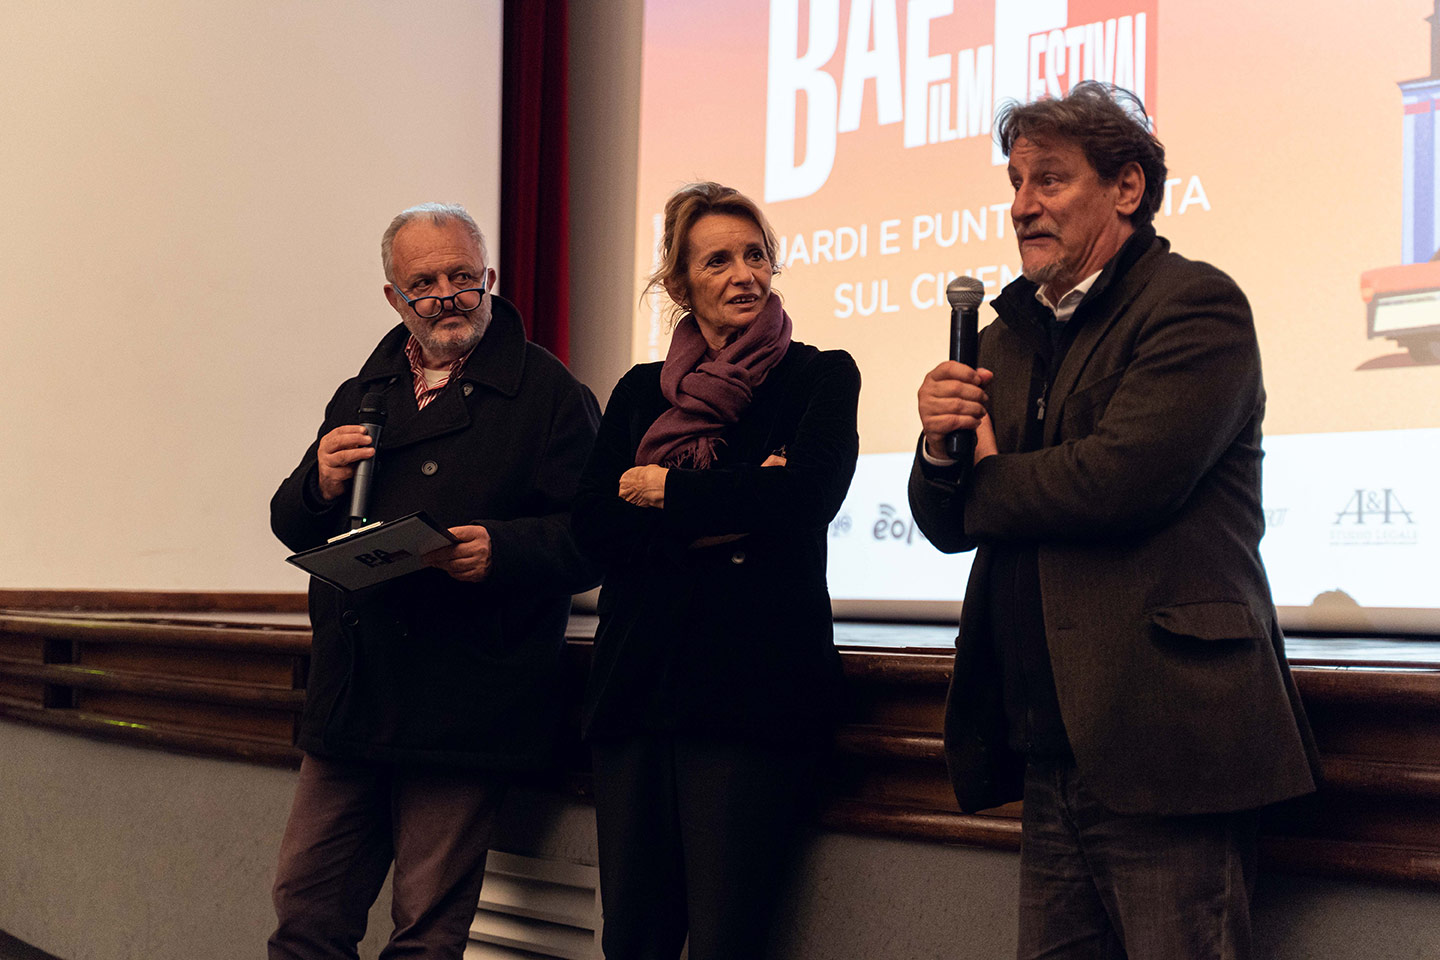 Steve Della Casa, Paola Poli, Giorgio Tirabassi